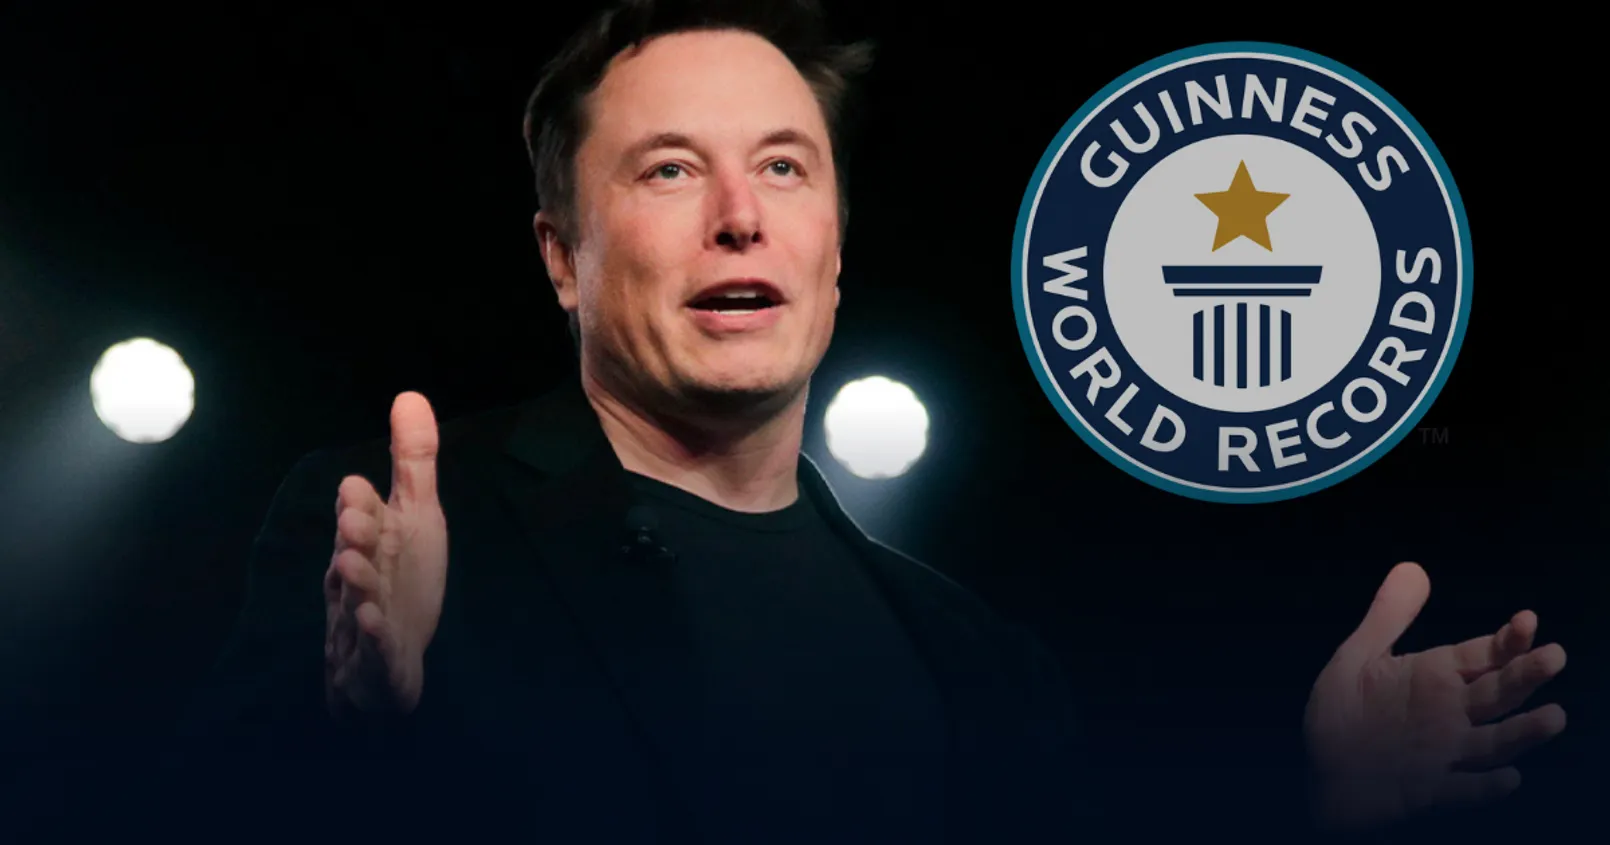 Elon Musk สร้างสถิติขาดทุนมากที่สุดในโลก